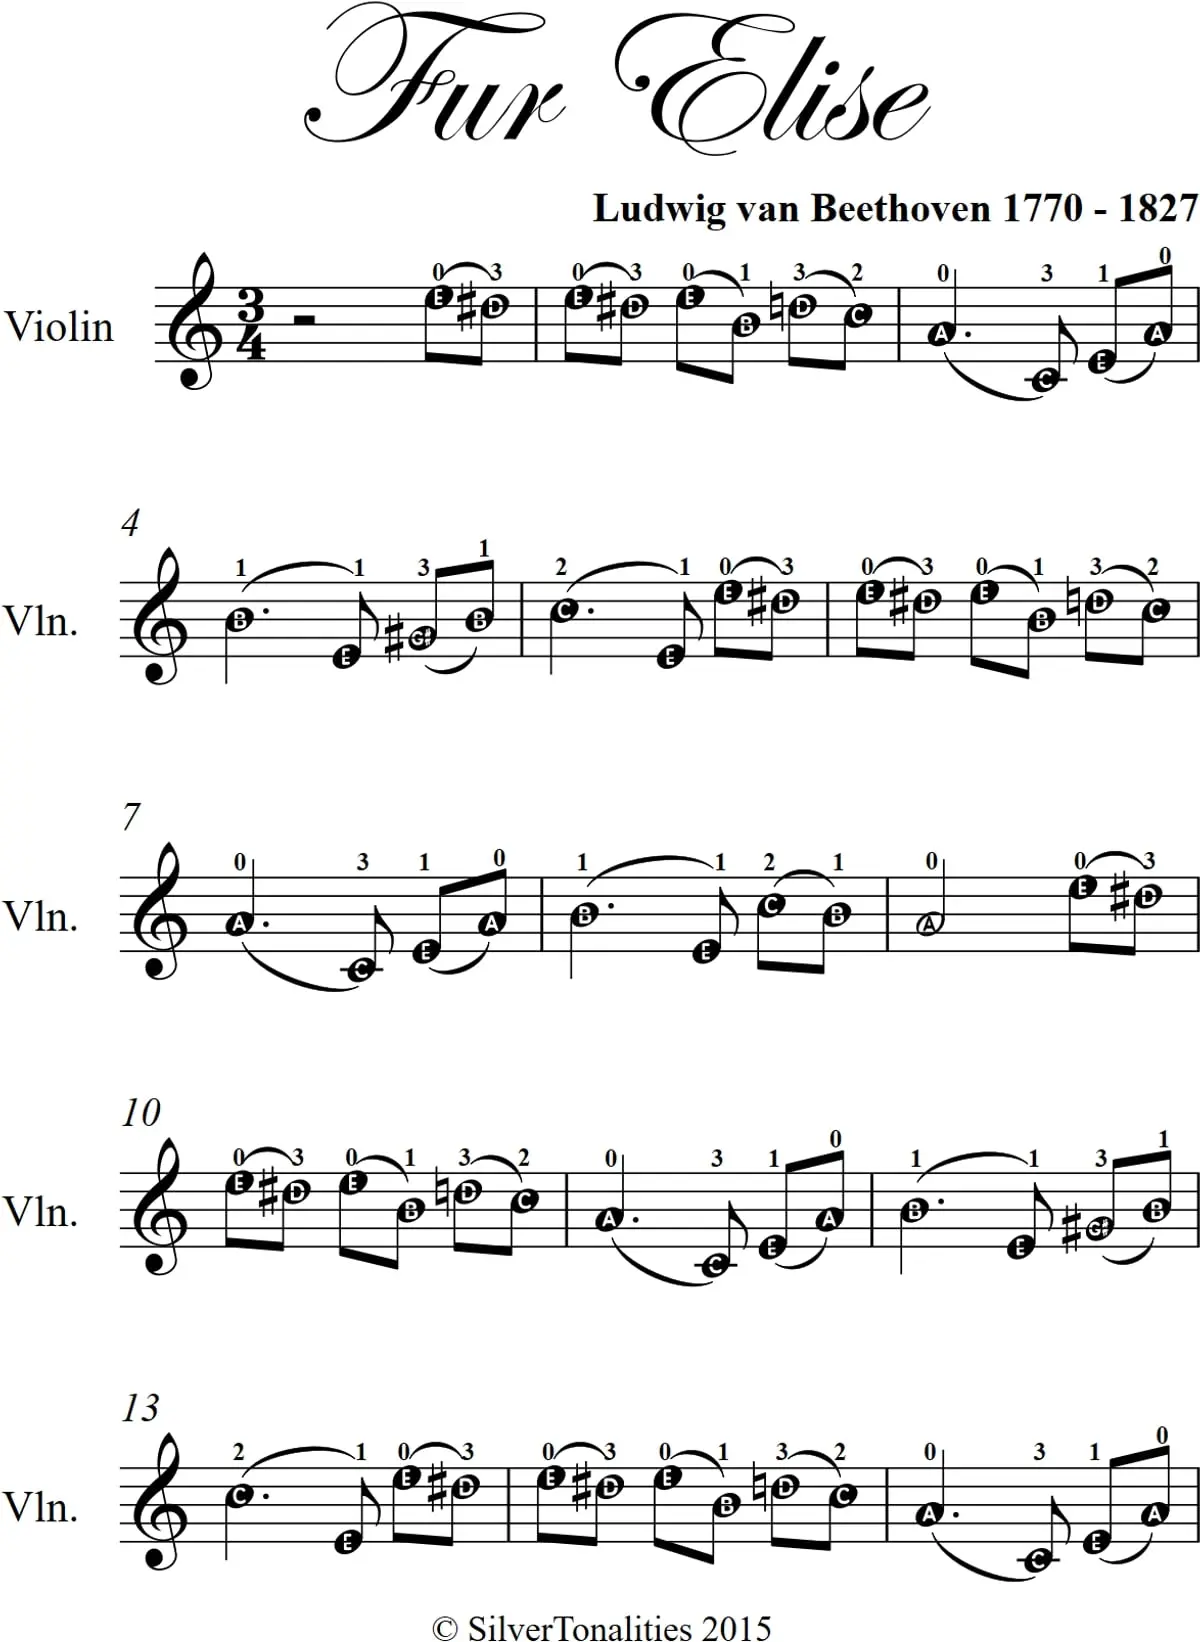 fur elise violin version - Why was Für Elise titled incorrectly